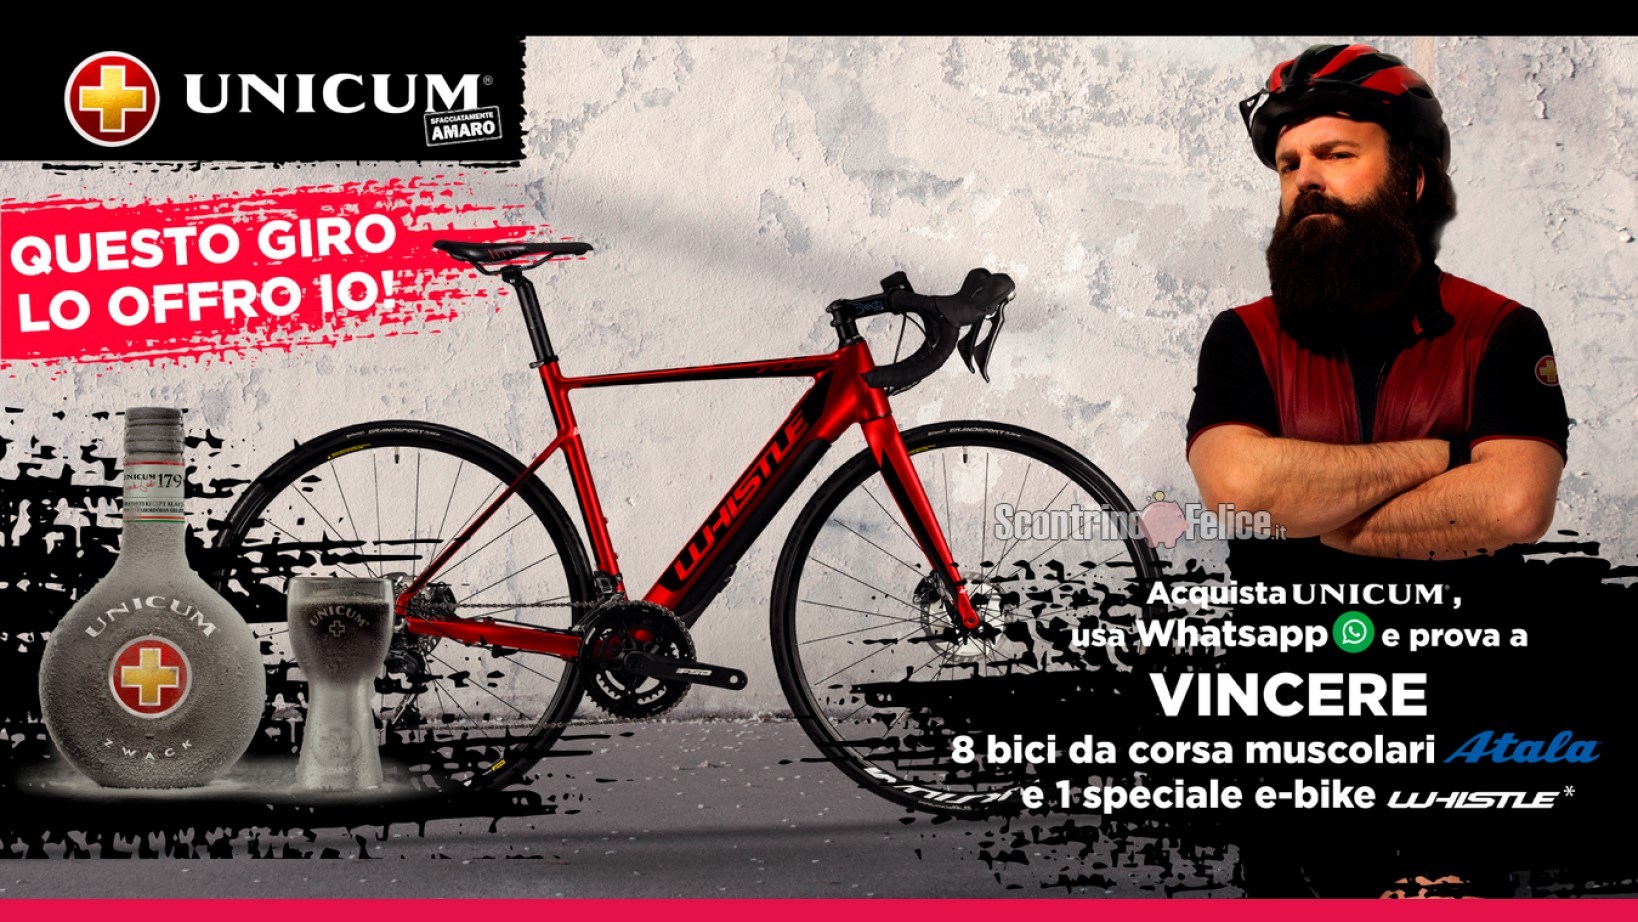 Concorso Unicum “Questo giro lo offro io”: vinci bici da corsa e elettrica Atala